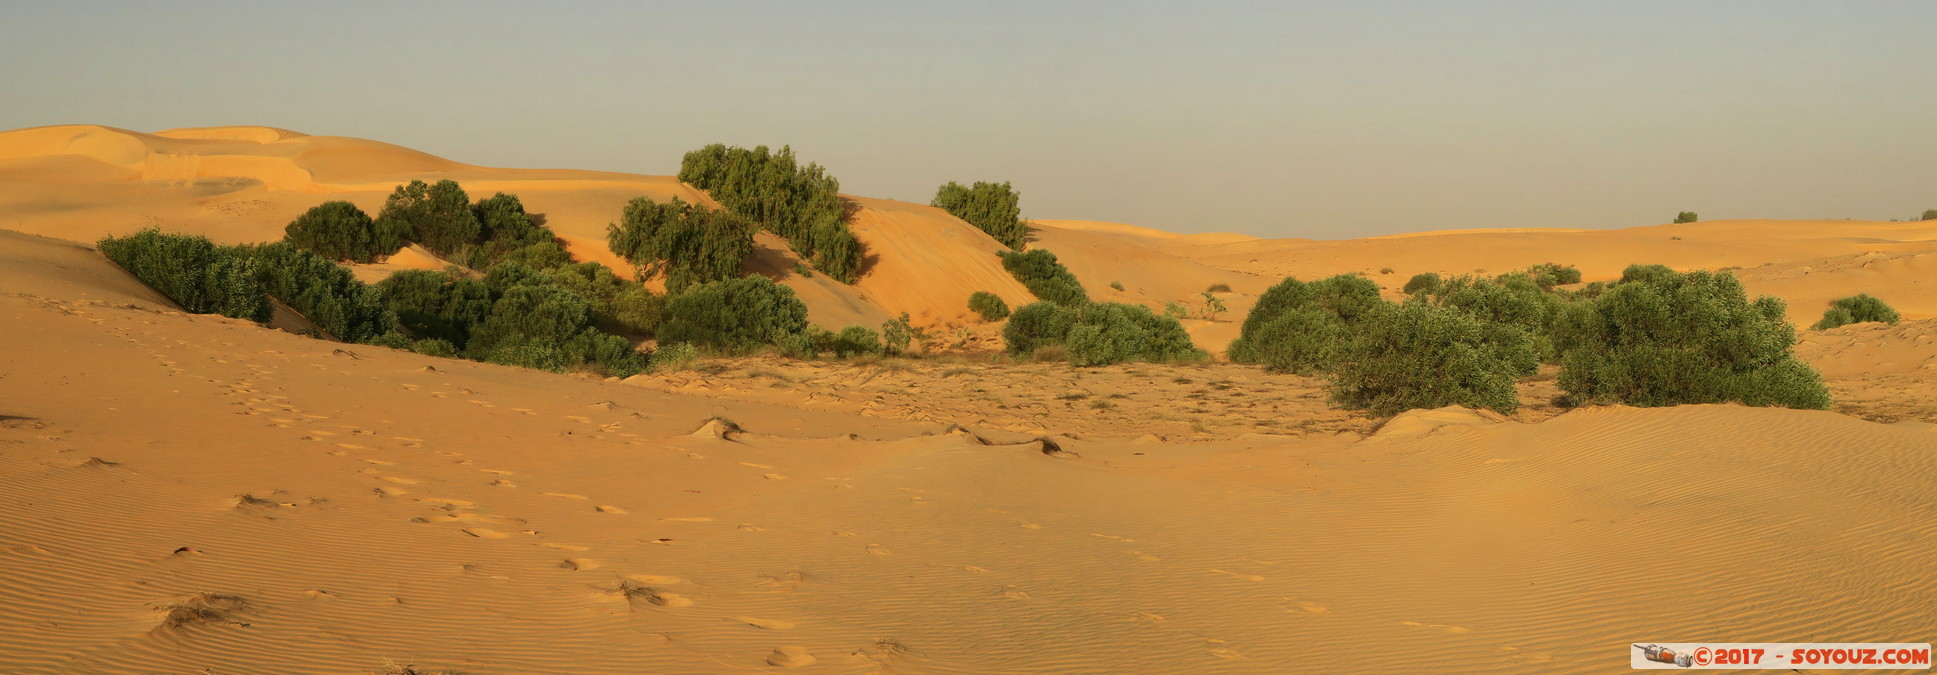 Desert de Lompoul - Panorama
Mots-clés: geo:lat=15.45925392 geo:lon=-16.69083953 geotagged SEN Senegal Thiès Tioukougne Peul Désert de Lompoul Desert panorama